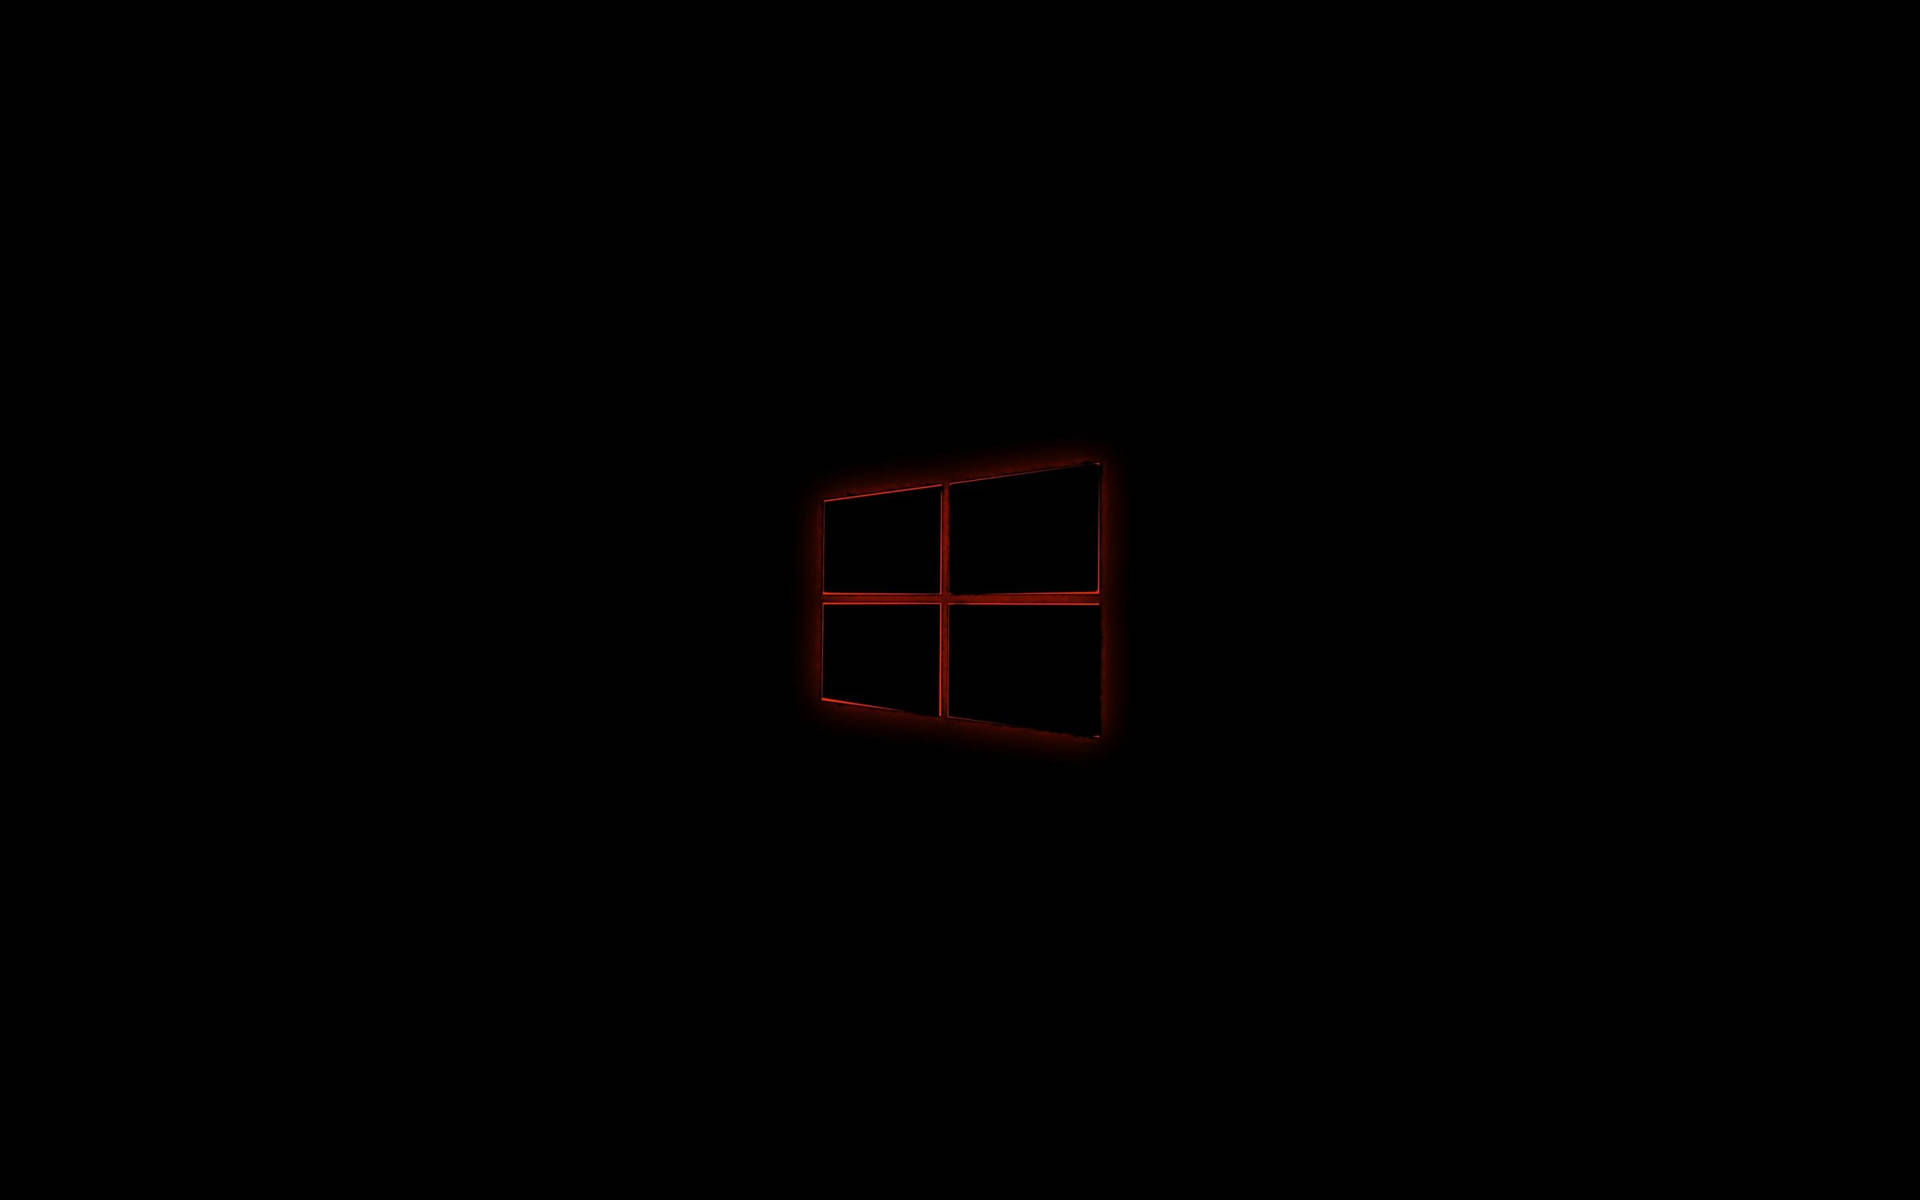 Đụng tới chất lượng với Hình nền đen Windows 10 tải xuống, bạn sẽ được trải nghiệm những chi tiết tinh tế với gam màu đen chủ đạo mang đến sự tươi mới đầy phong cách cho giao diện của bạn!